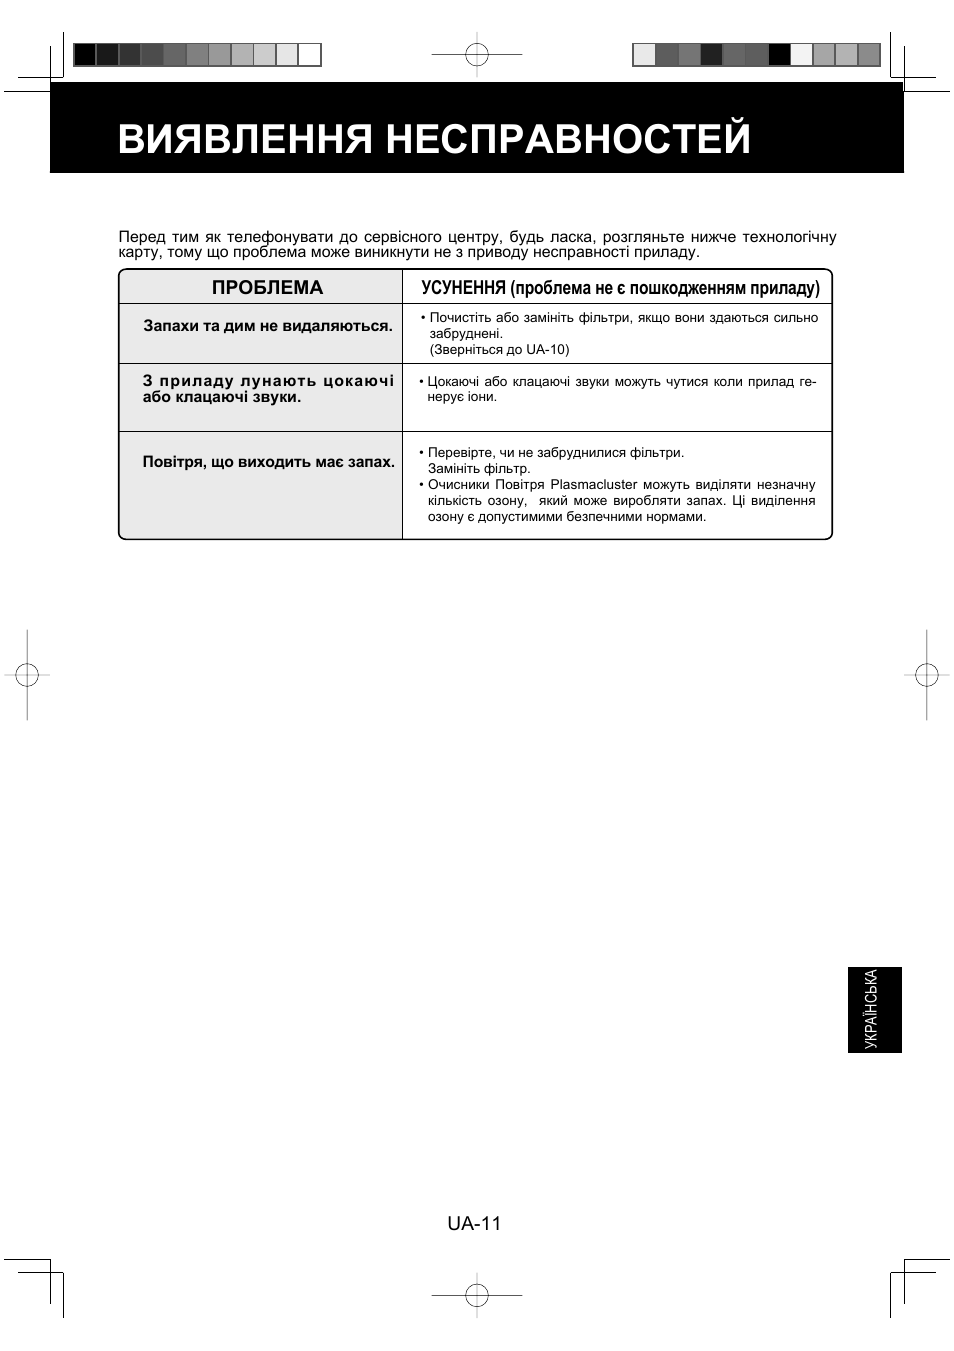 Виявлення несправностей | Sharp FU-Y30EU User Manual | Page 111 / 113